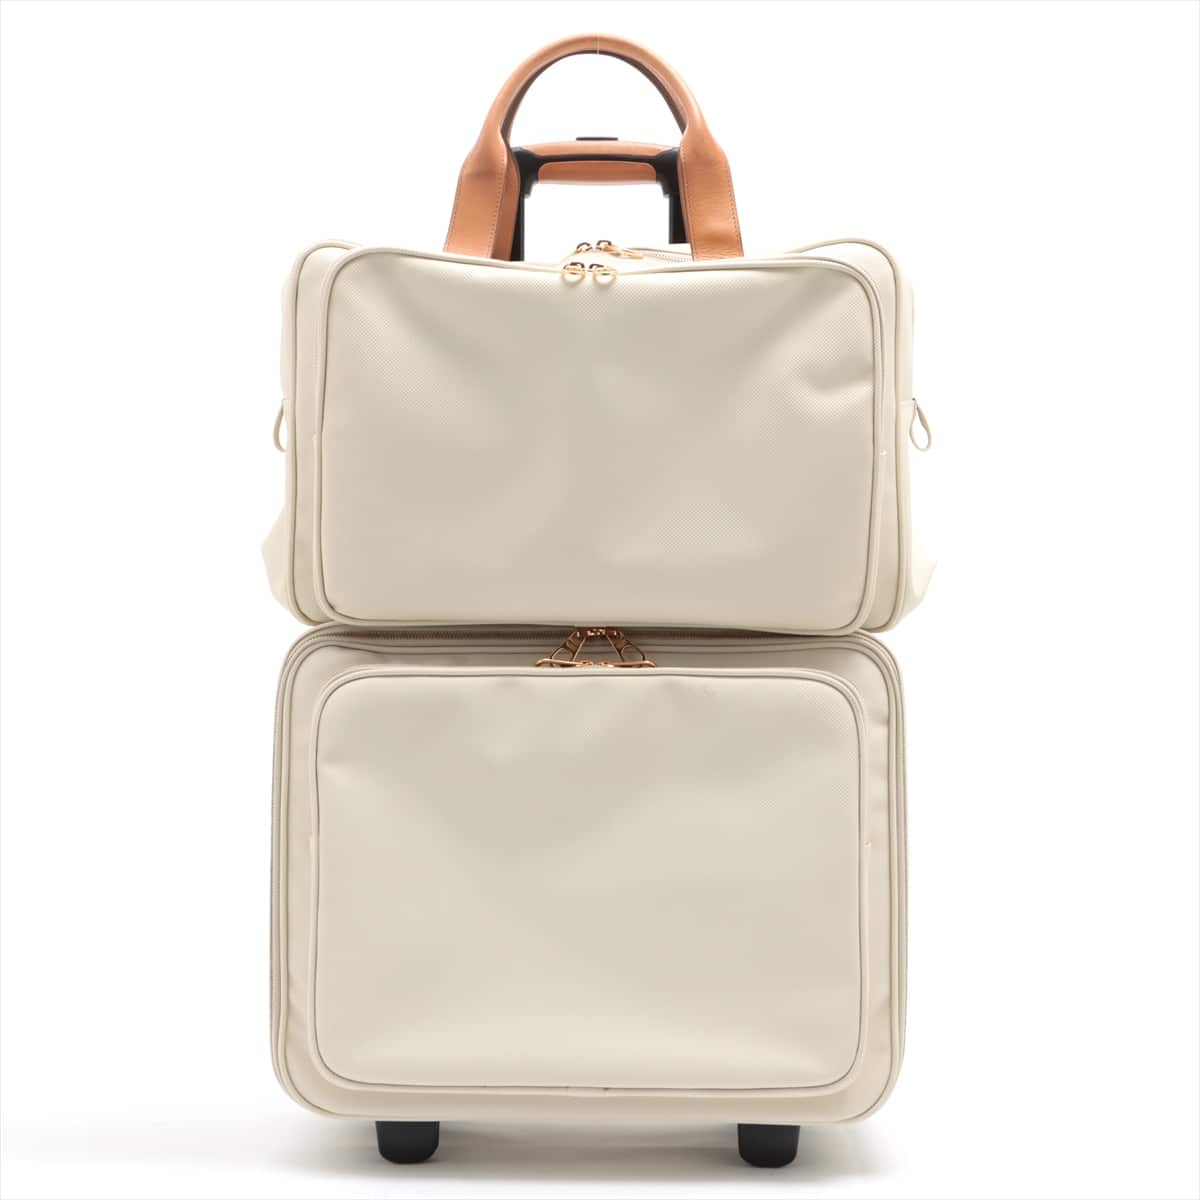 Bottega Veneta Marco Polo PVC & leather Carry case White 167304 PIN:000